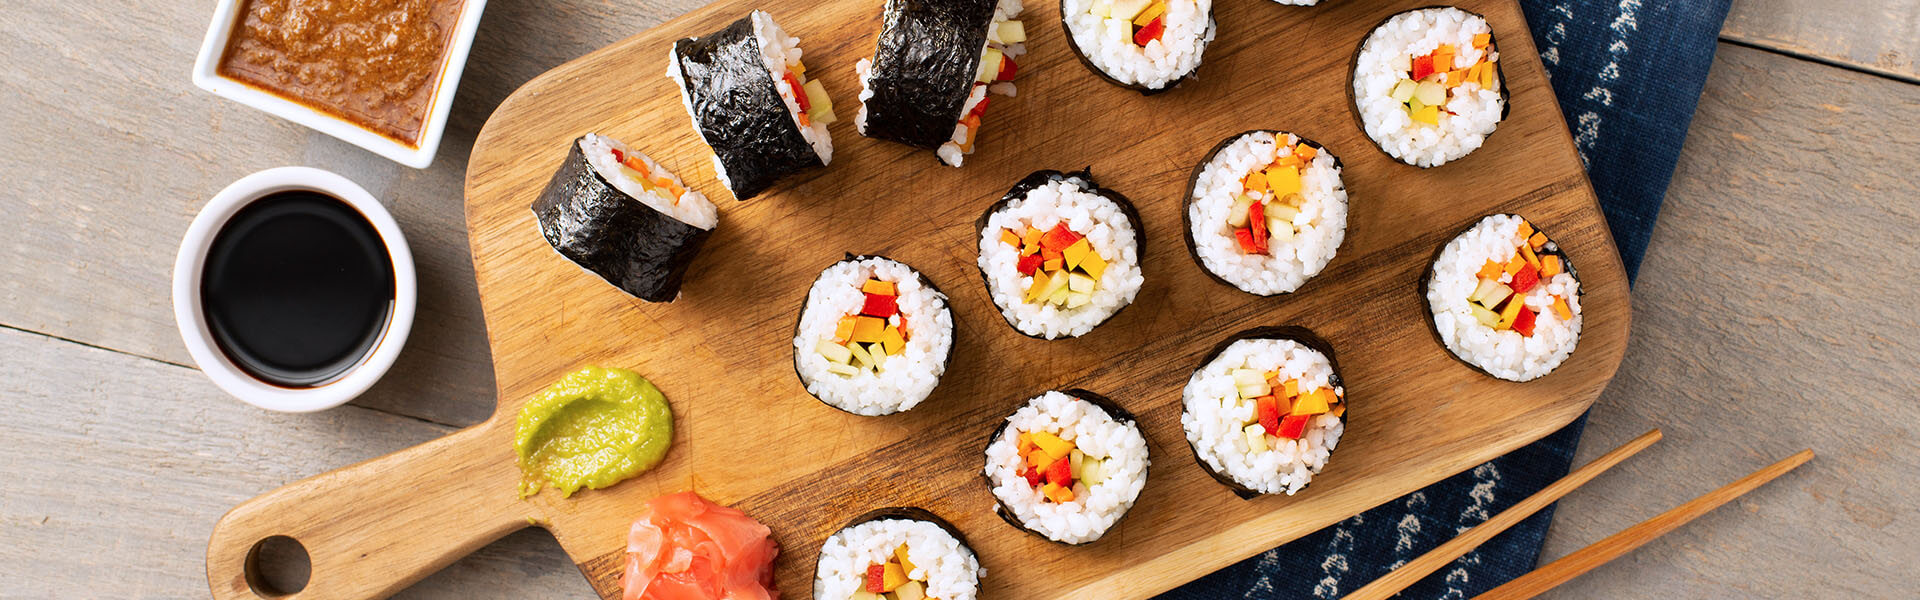 Cómo hacer sushi casero: paso a paso | Carolina® Rice